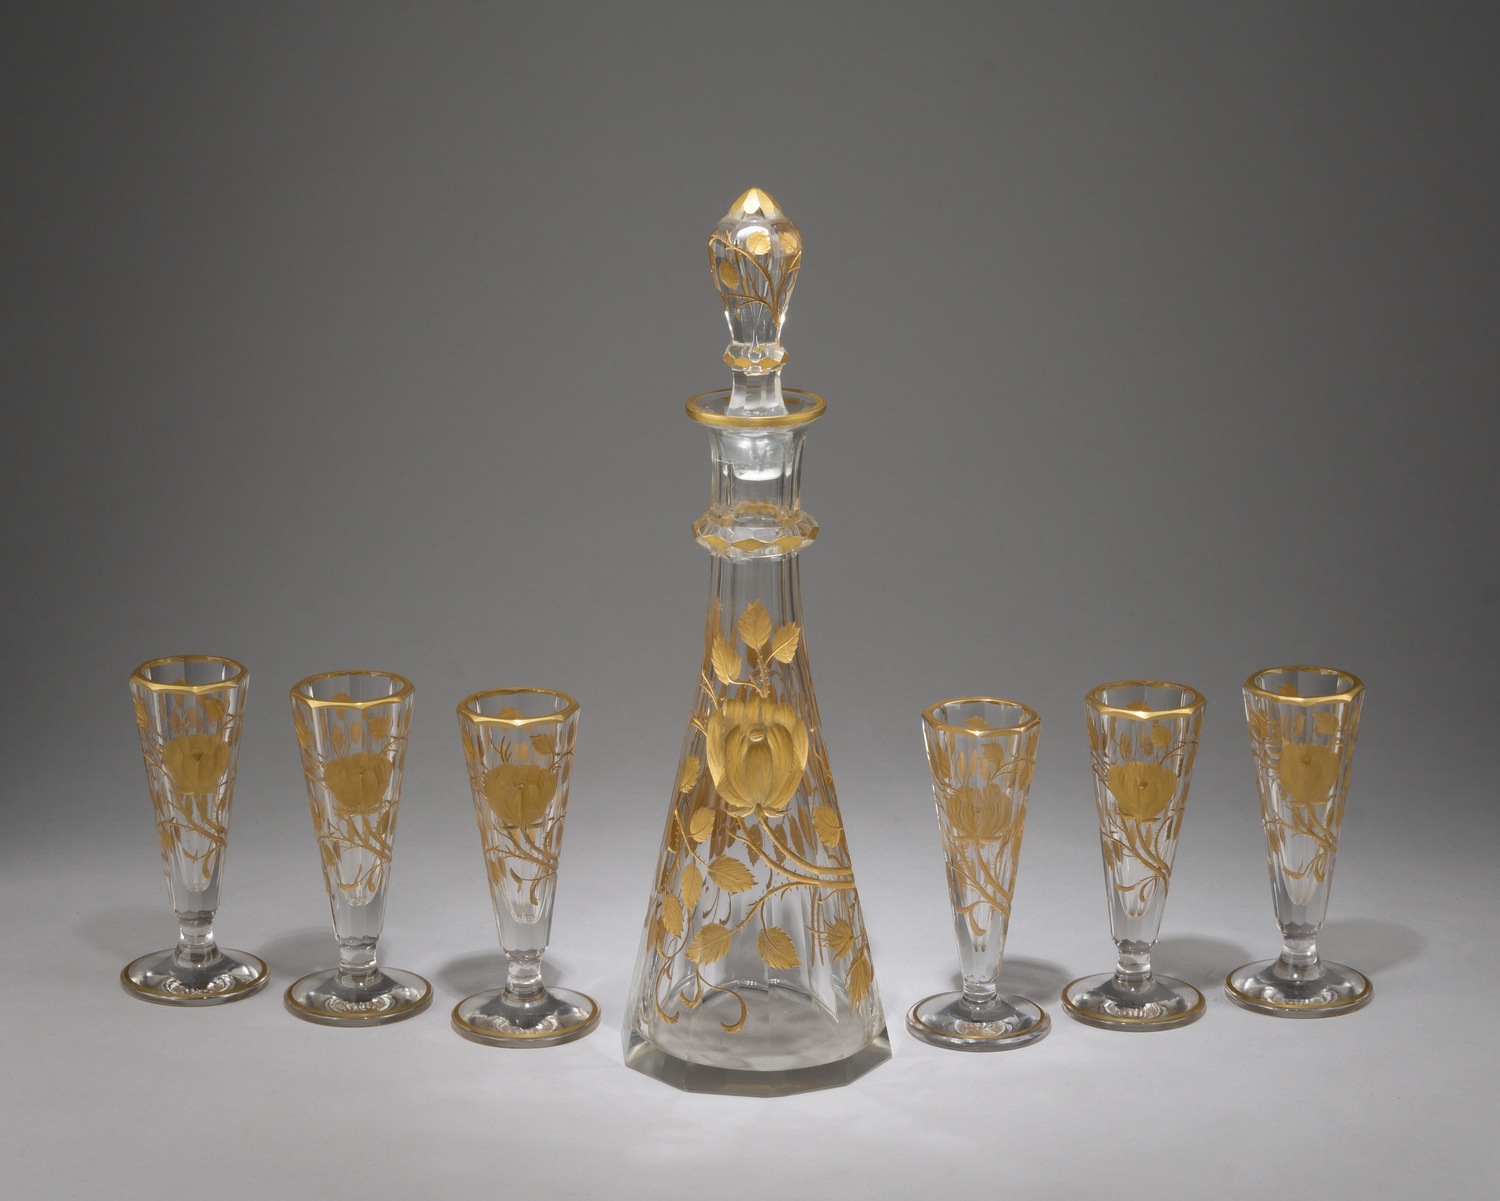 Ликерный набор на шесть персон. Богемия, фирма Moser, начало XX век.